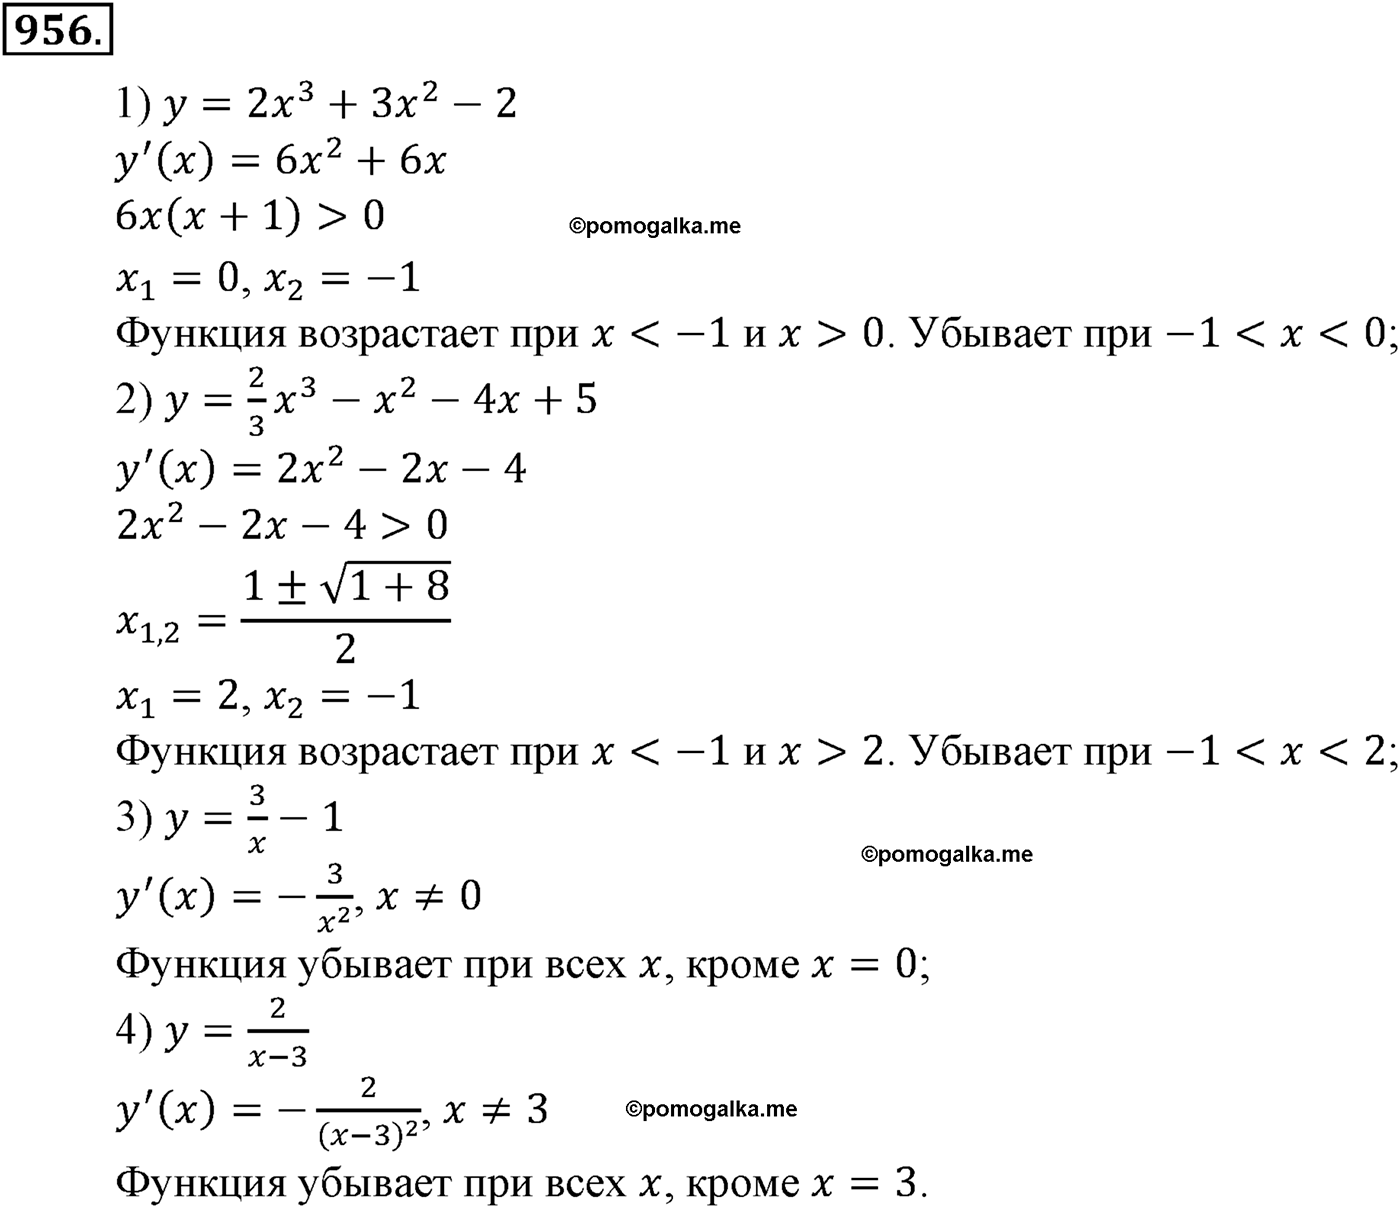 разбор задачи №956 по алгебре за 10-11 класс из учебника Алимова, Колягина